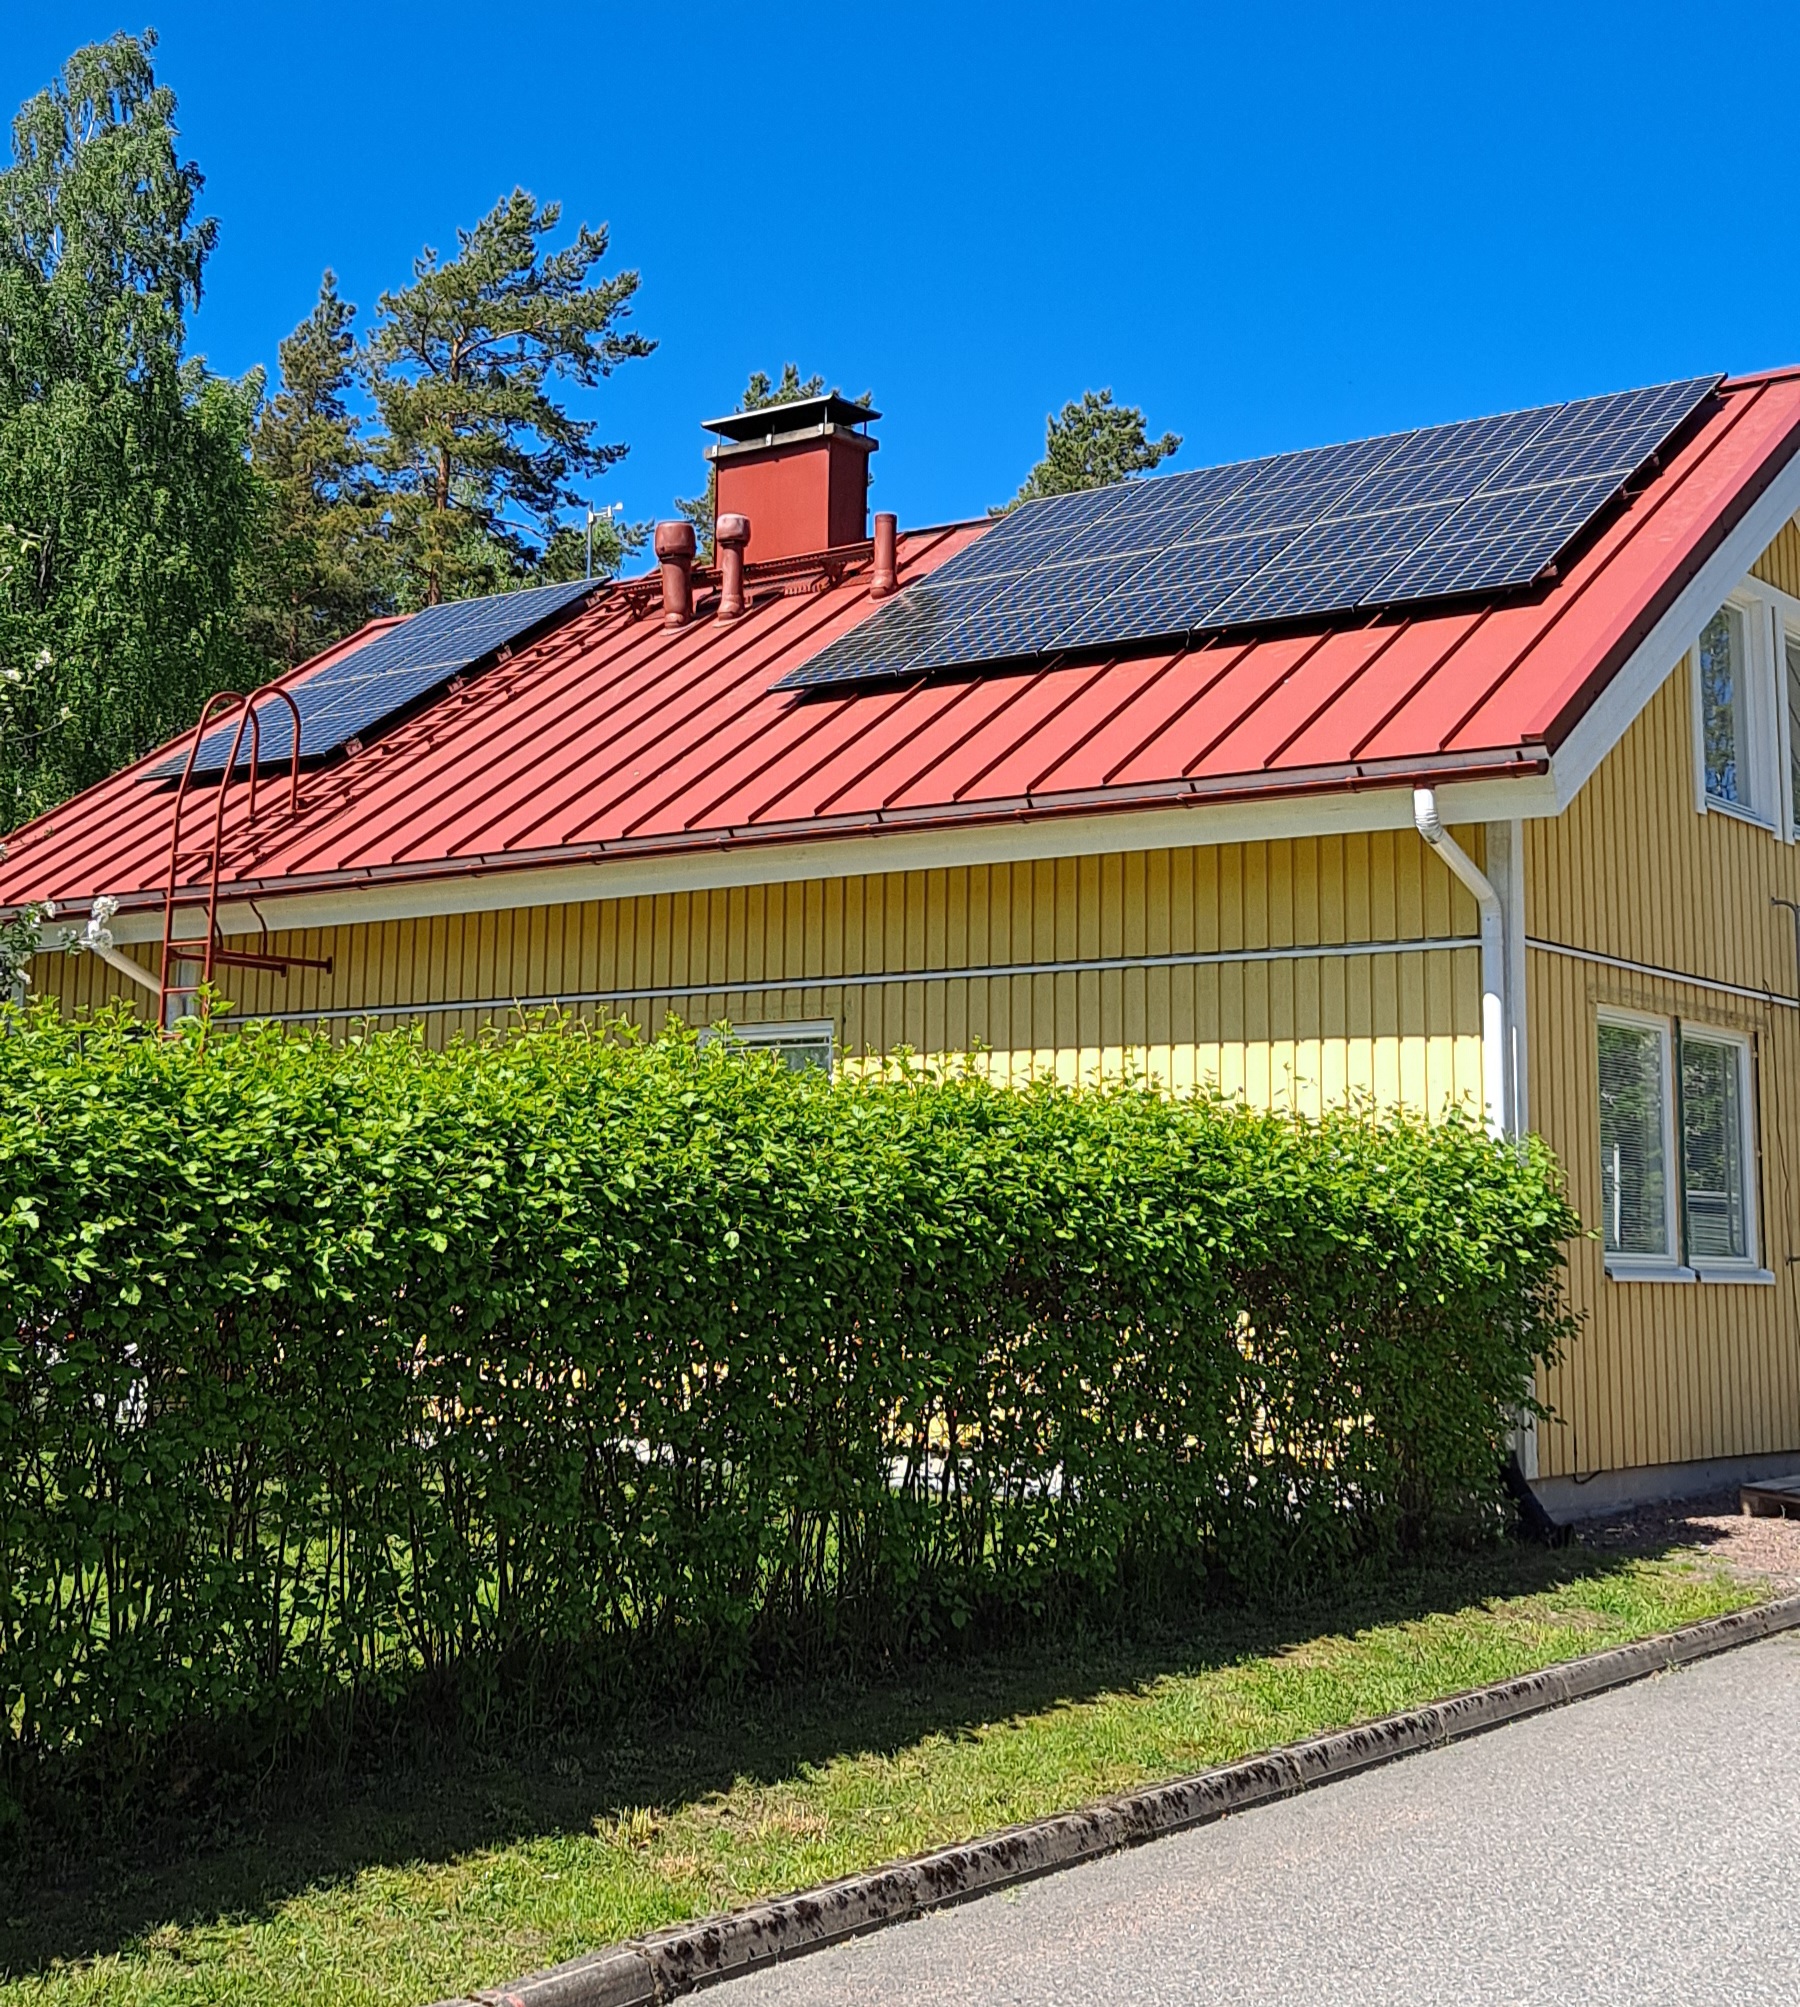 Keltainen puutalo, jonka punaisella peltikatolla on asennettuna aurinkopaneelit. Talon edustalla on vihreä pensasaita. Sää on aurinkoinen ja taivas kirkkaan sininen.